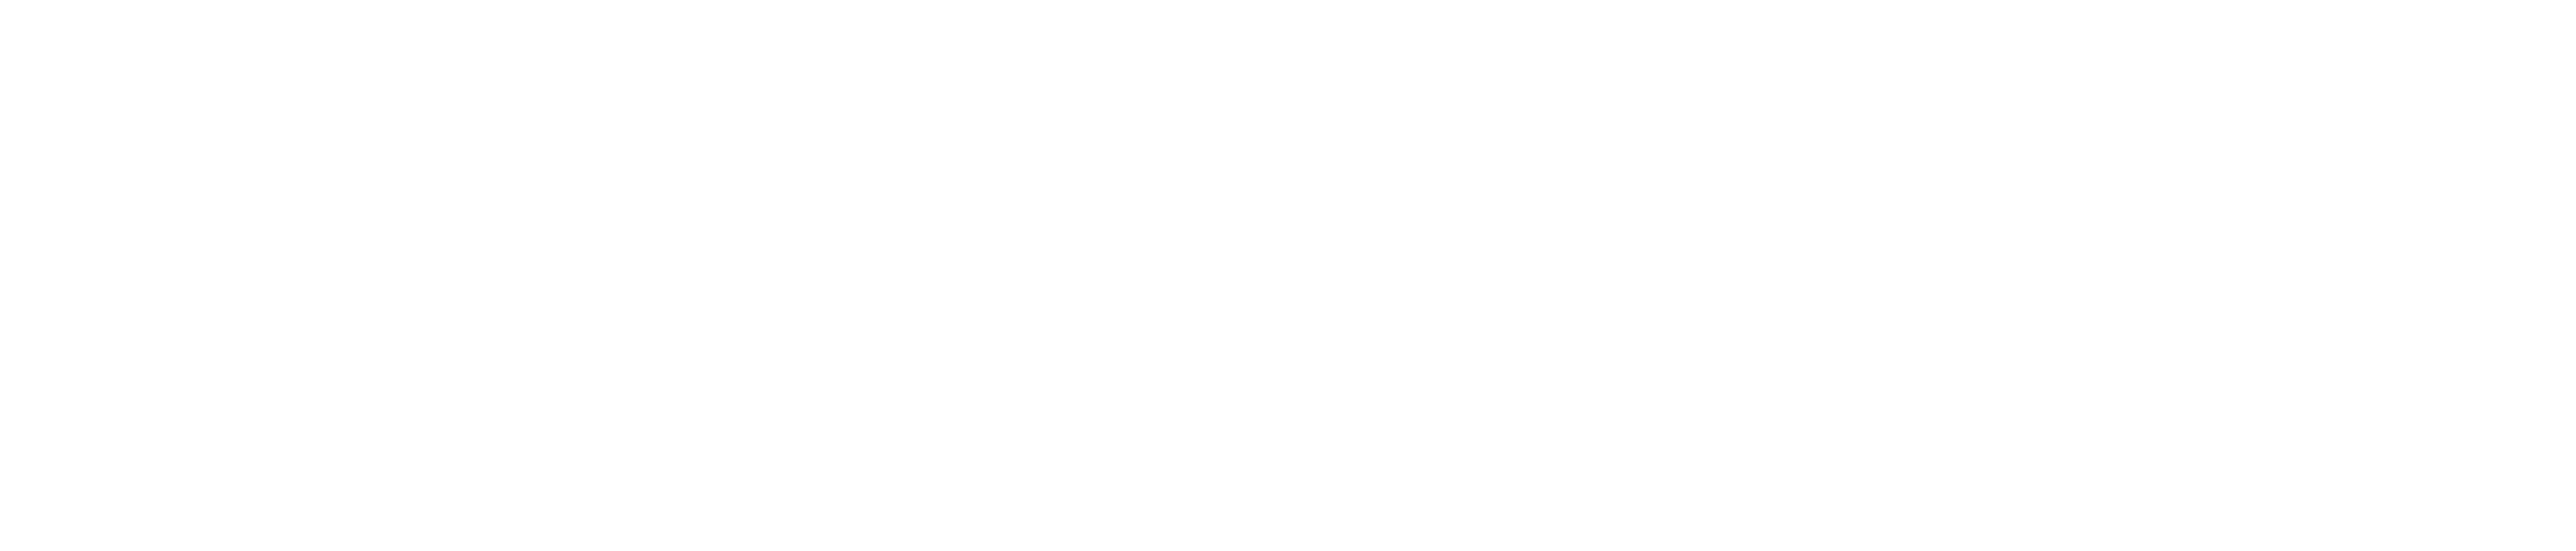 White logo - carsntoy